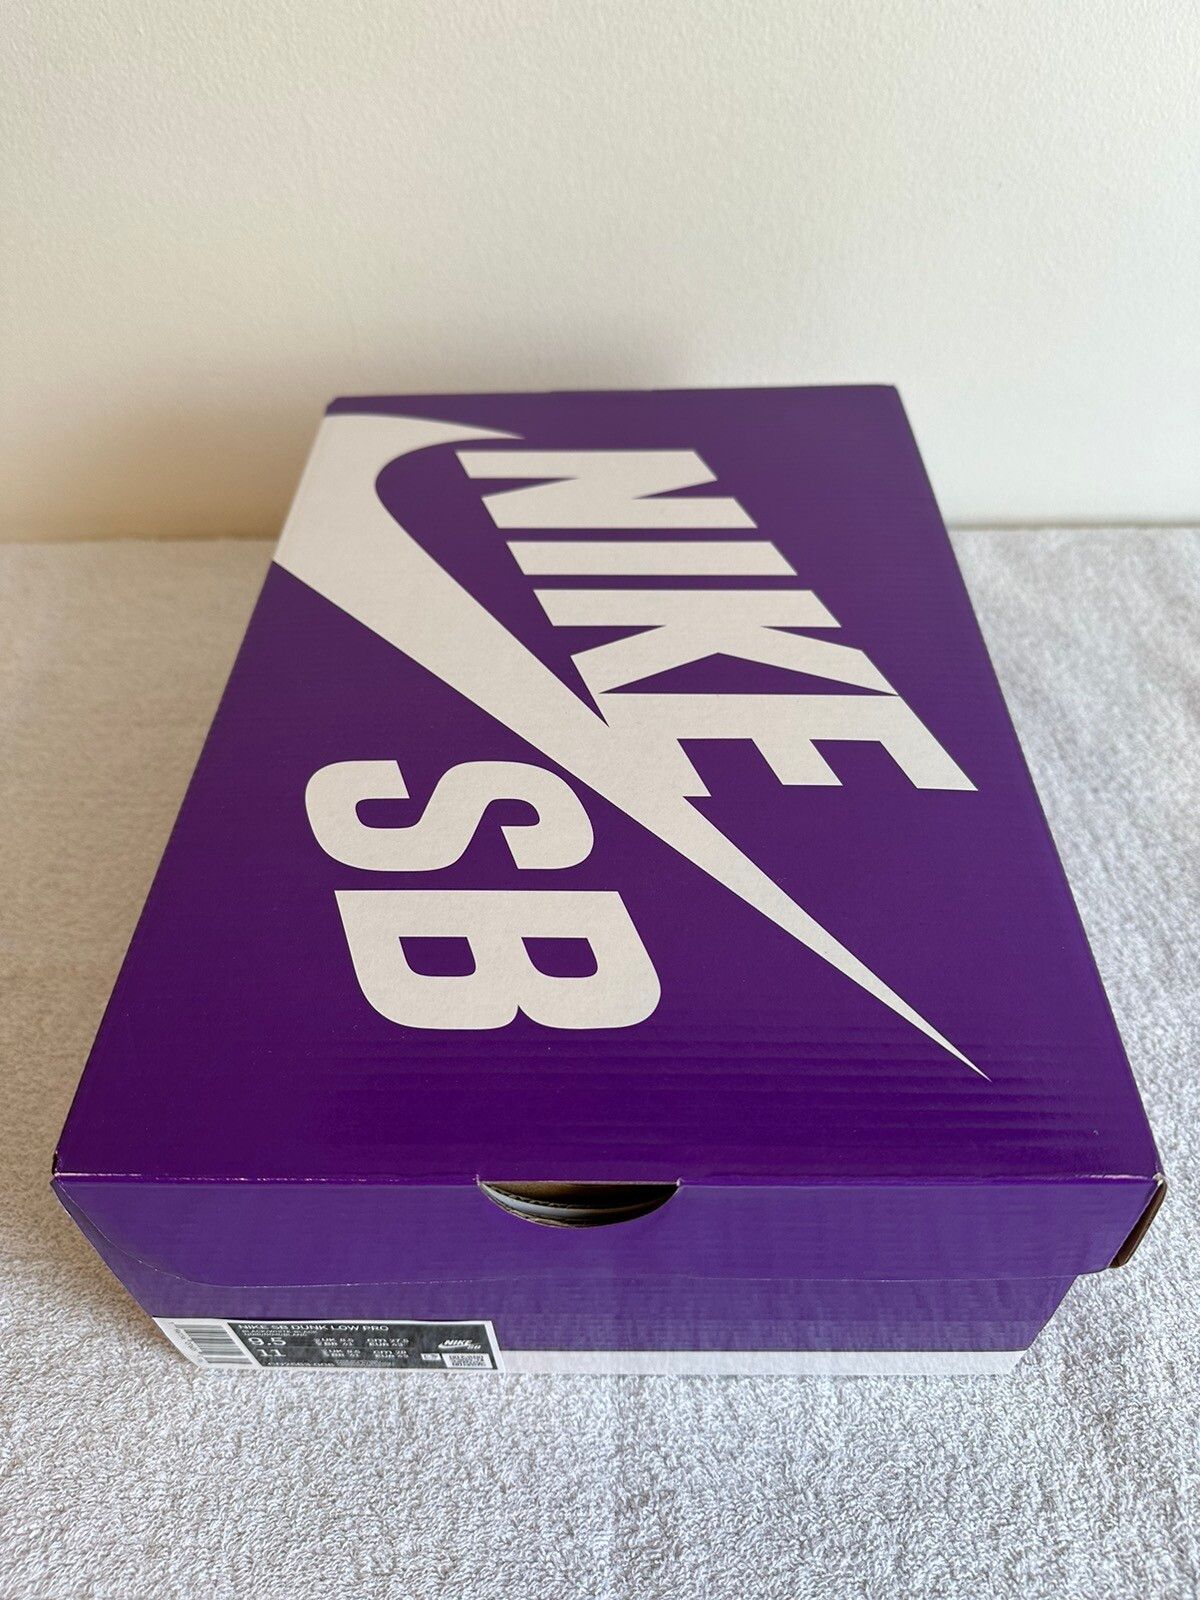 Nike Nike SB Dunk Low Pro Black Gum Size 9.5 Size US 9.5 / EU 42-43 - 17 Preview